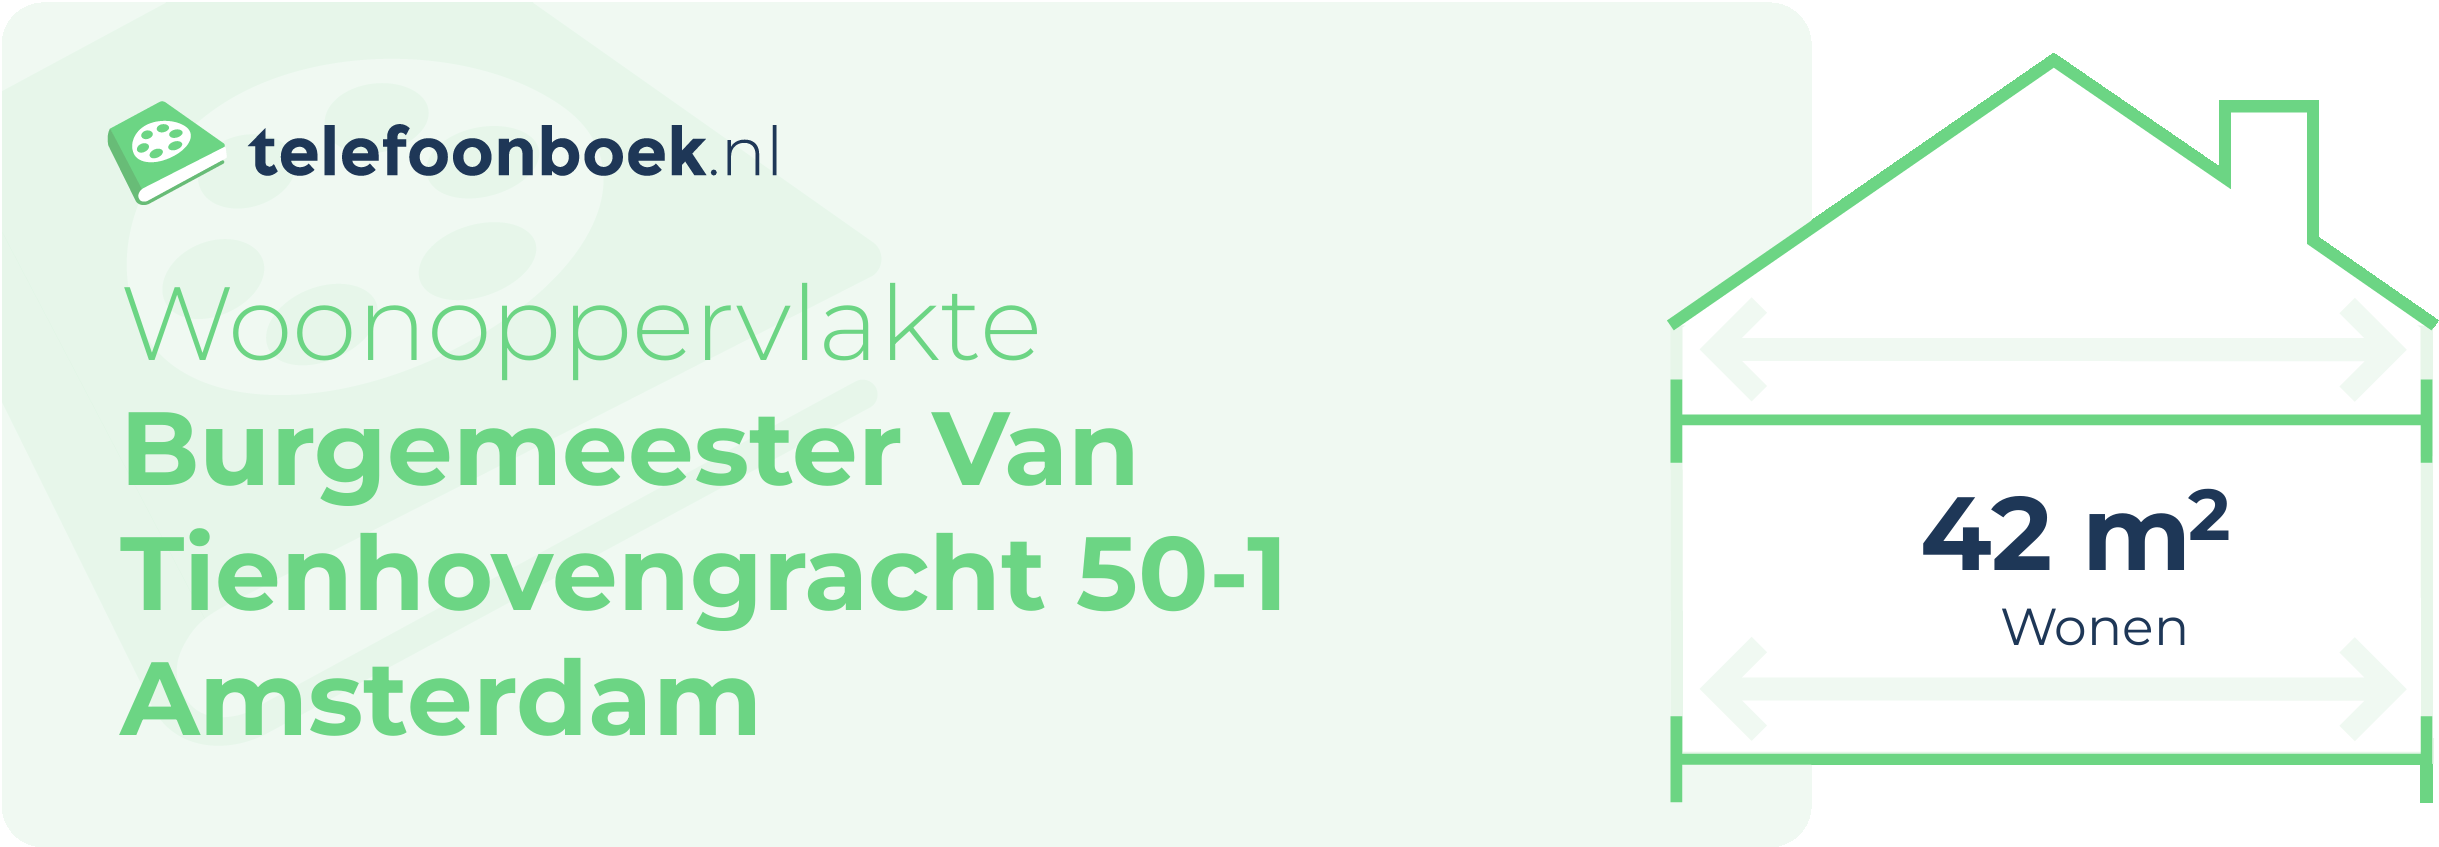 Woonoppervlakte Burgemeester Van Tienhovengracht 50-1 Amsterdam